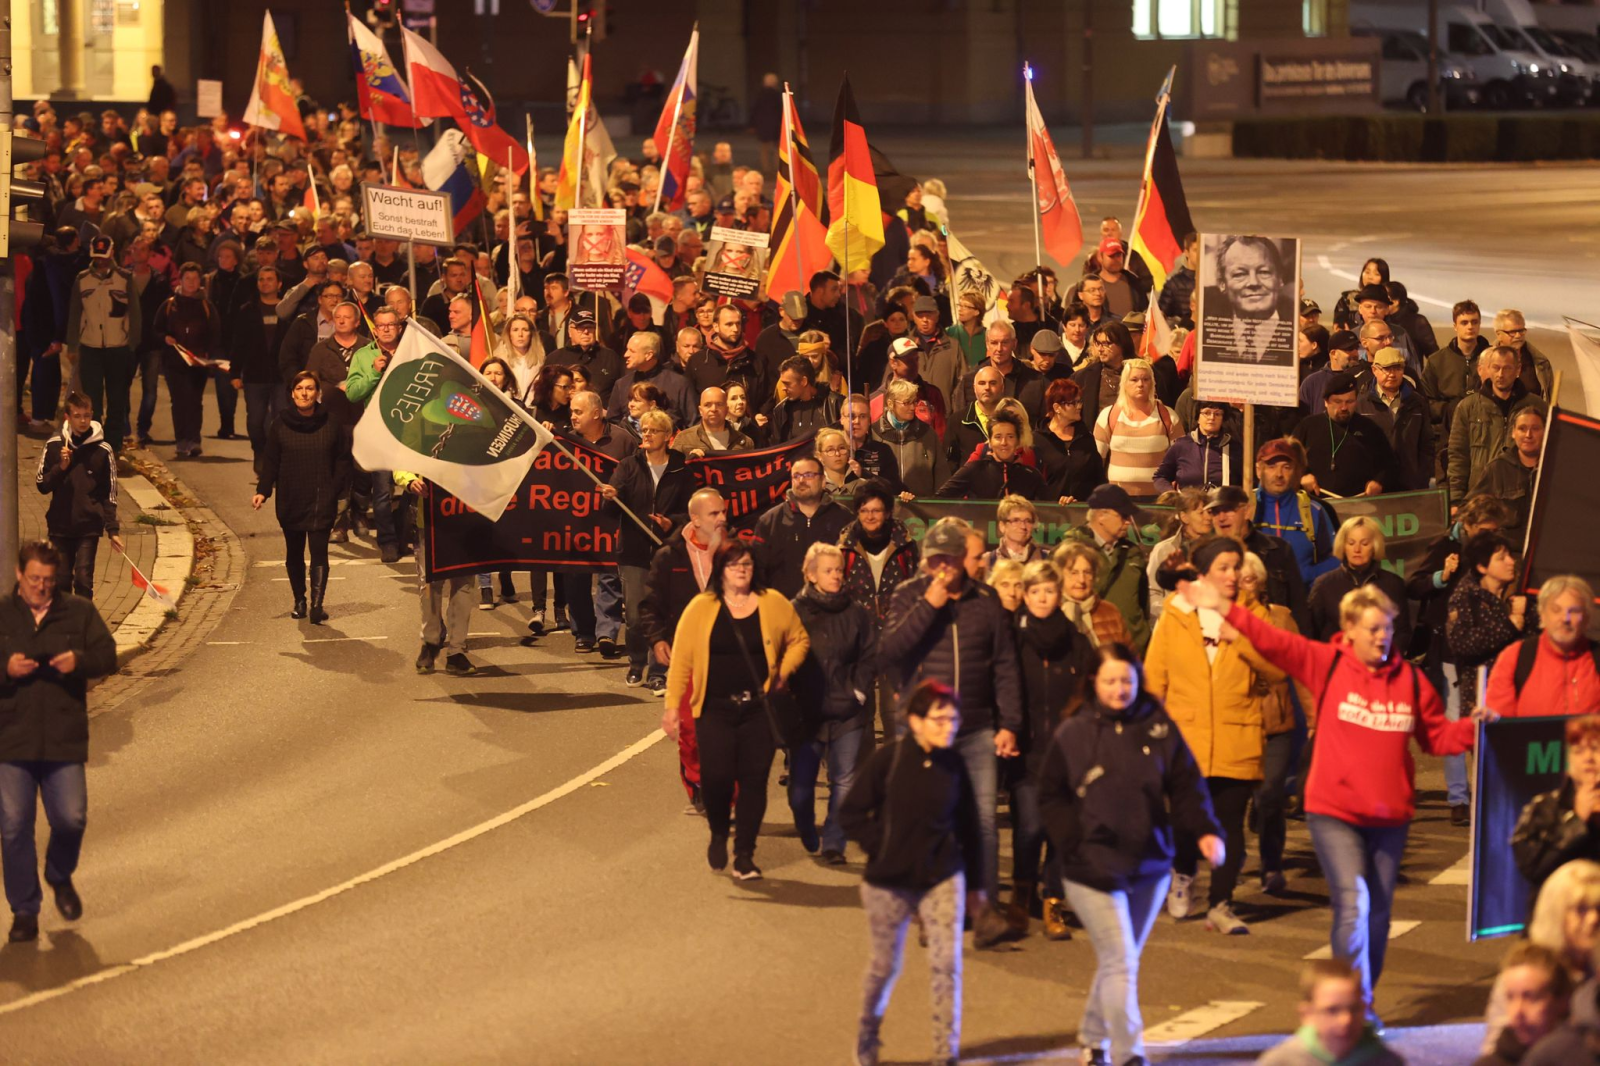 Teilnehmer einer Demonstration gegen die Energiepolitik der Bundesregierung und gegen Coronamaßnahmen laufen am Abend durch die Innenstadt.